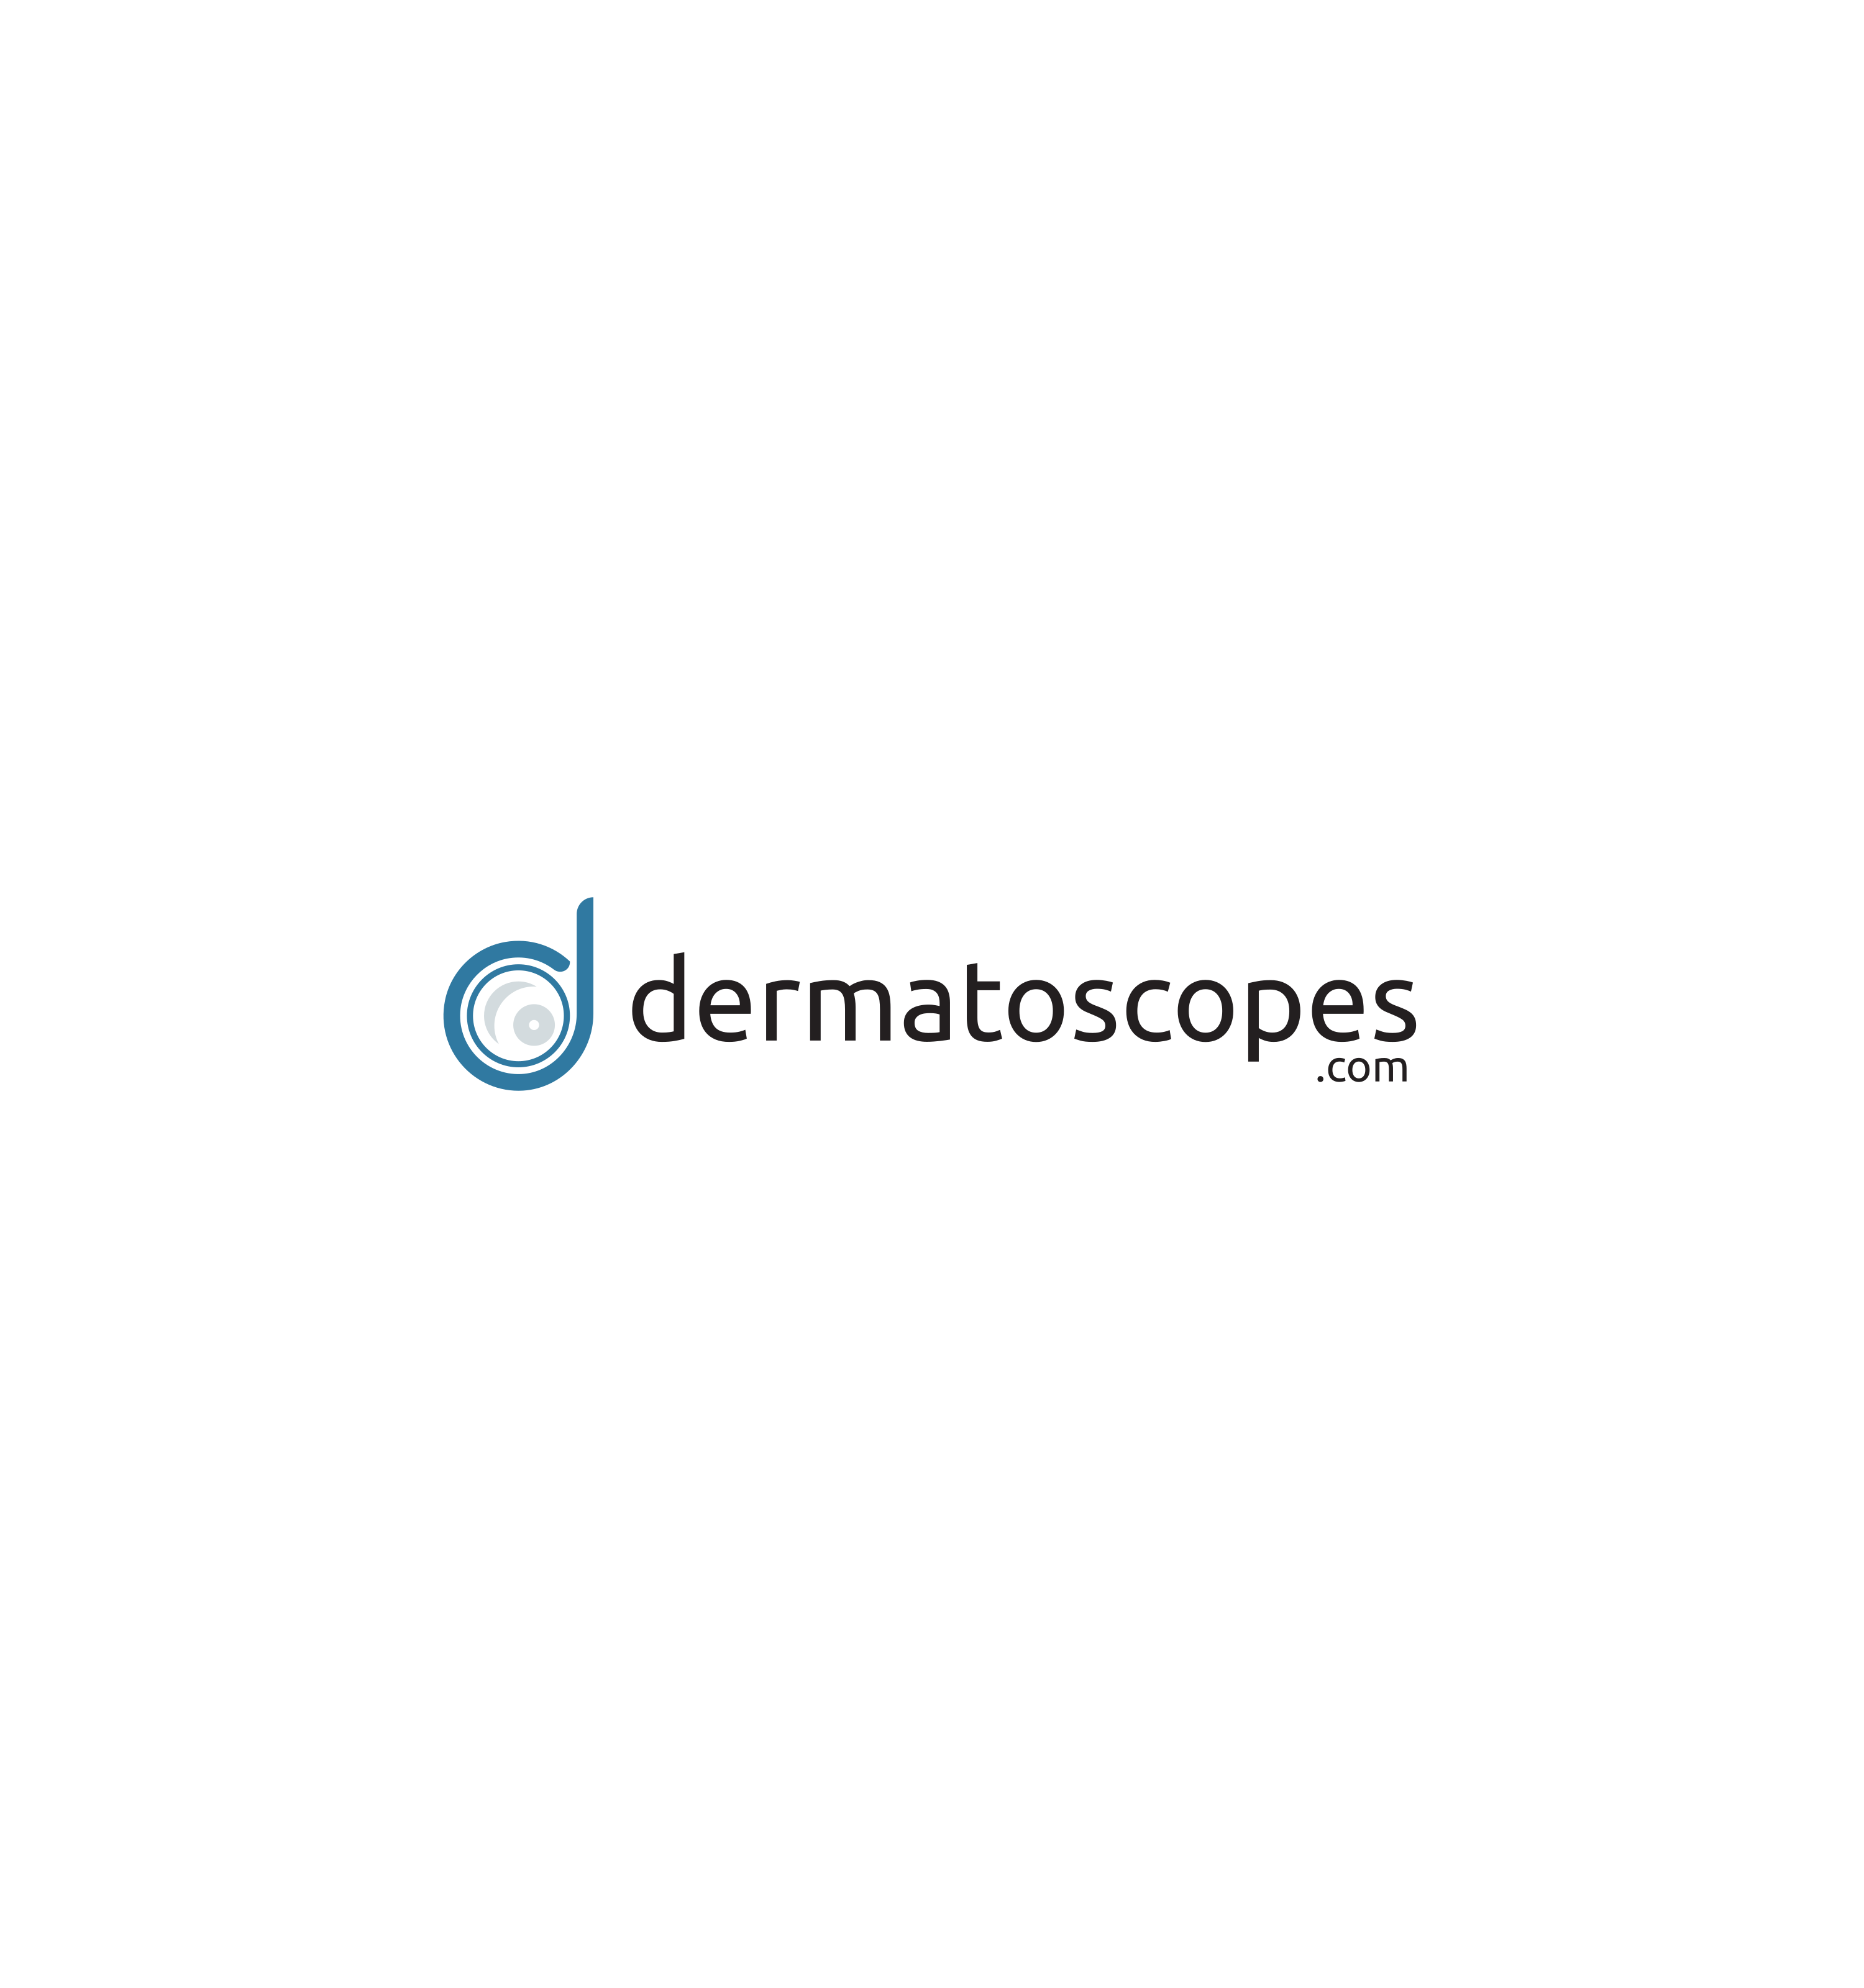 Dermatoscopes.com